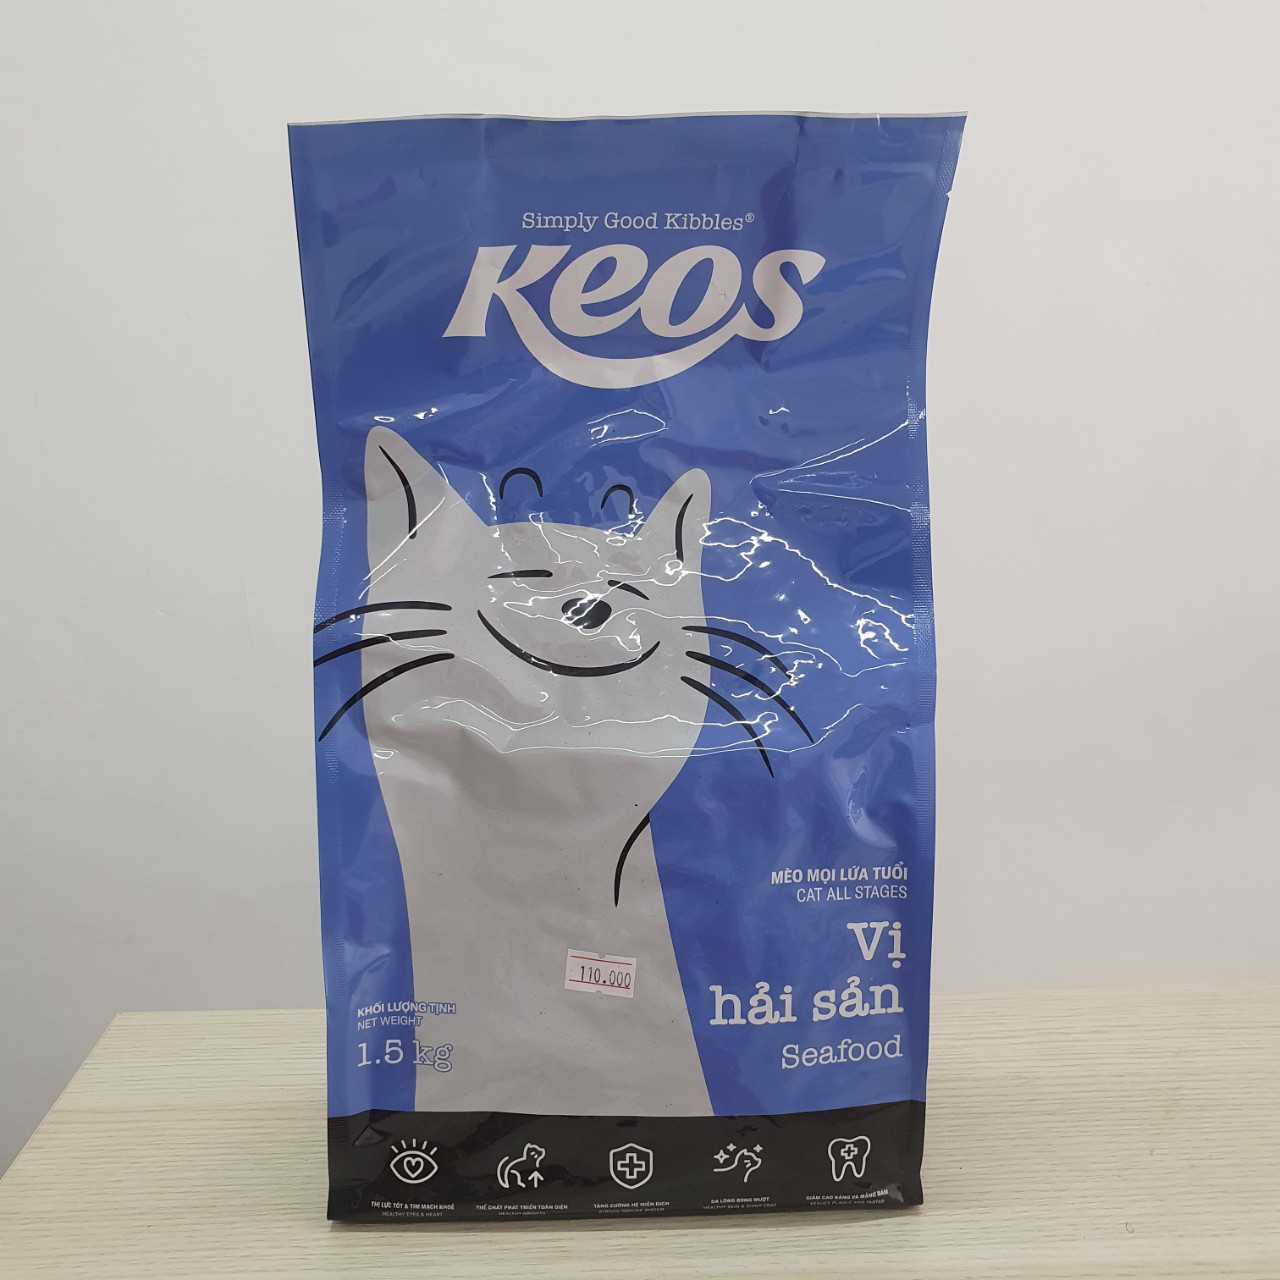 Thức ăn hạt Keos dành cho mèo mọi lứa tuổi vị hải sản gói 400g - 1.5kg